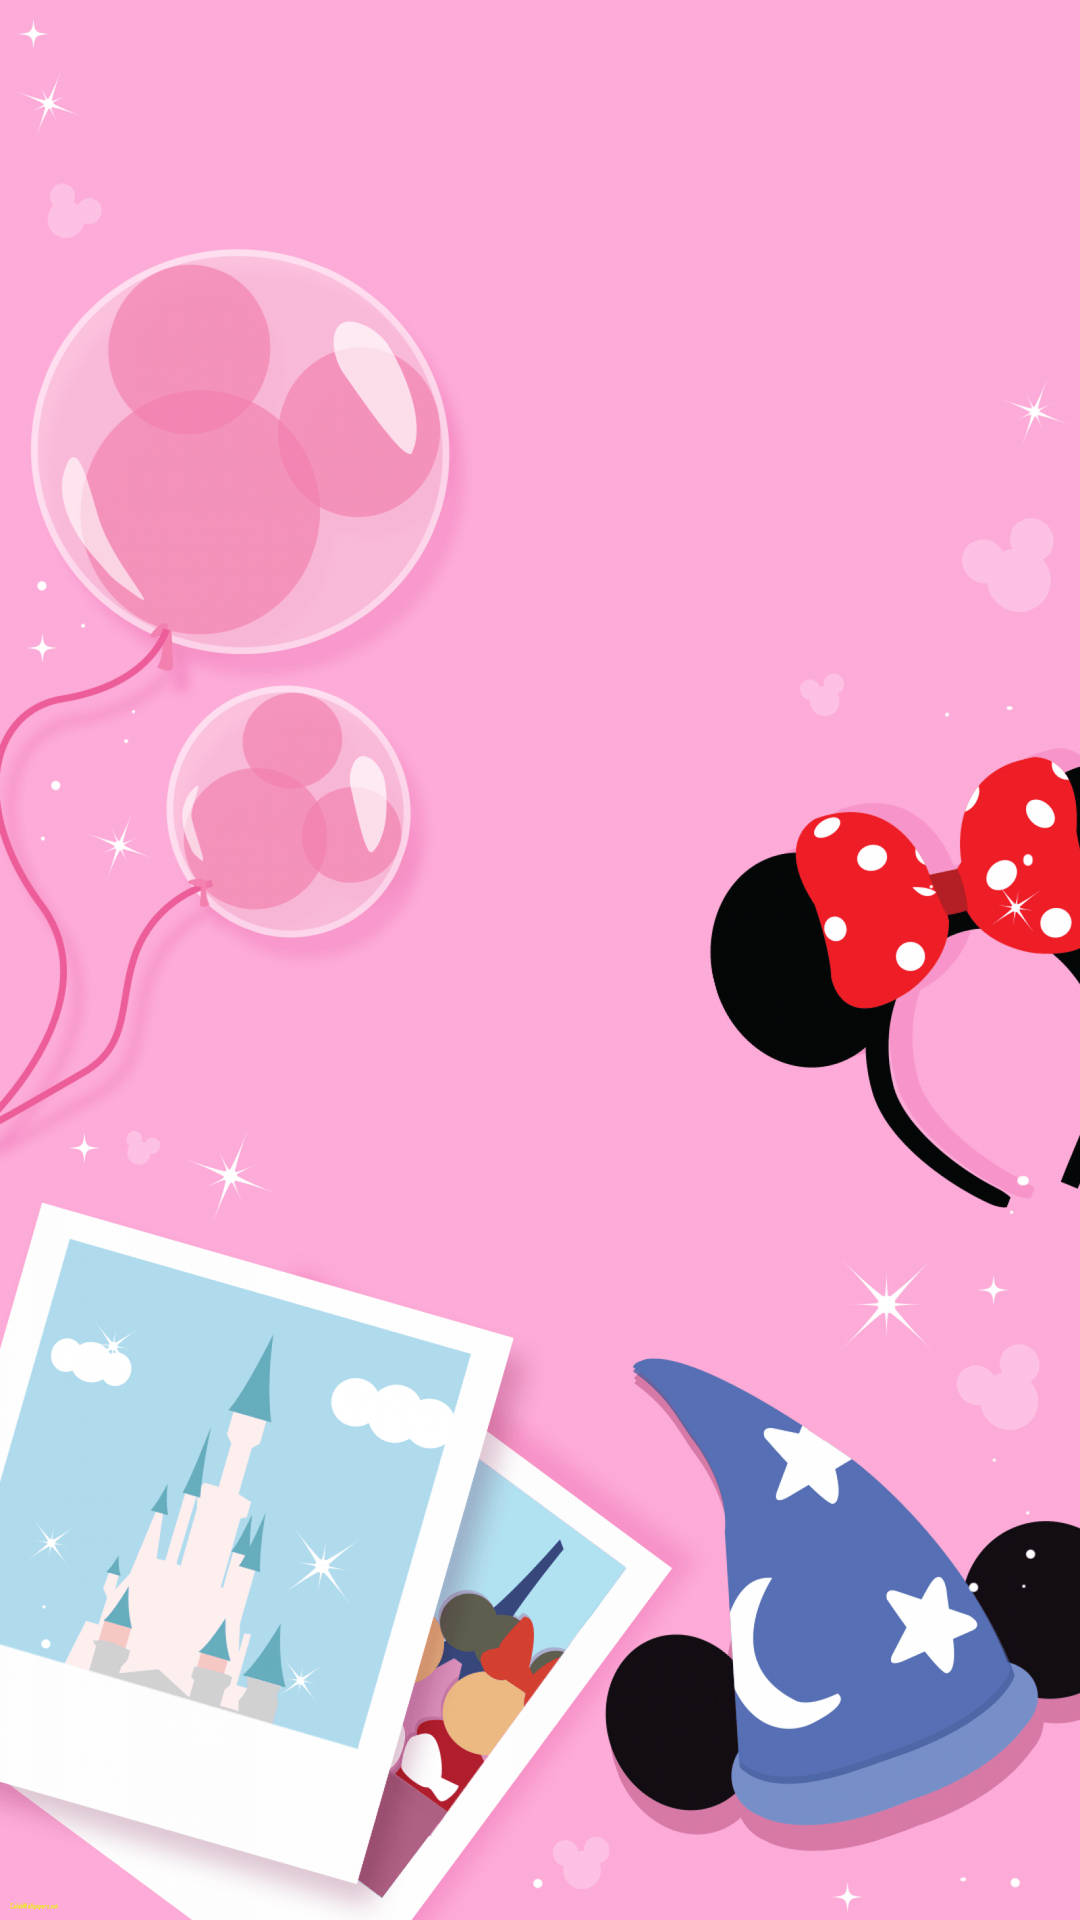 Cute Disneyland art in pink mobile phone wallpaper.